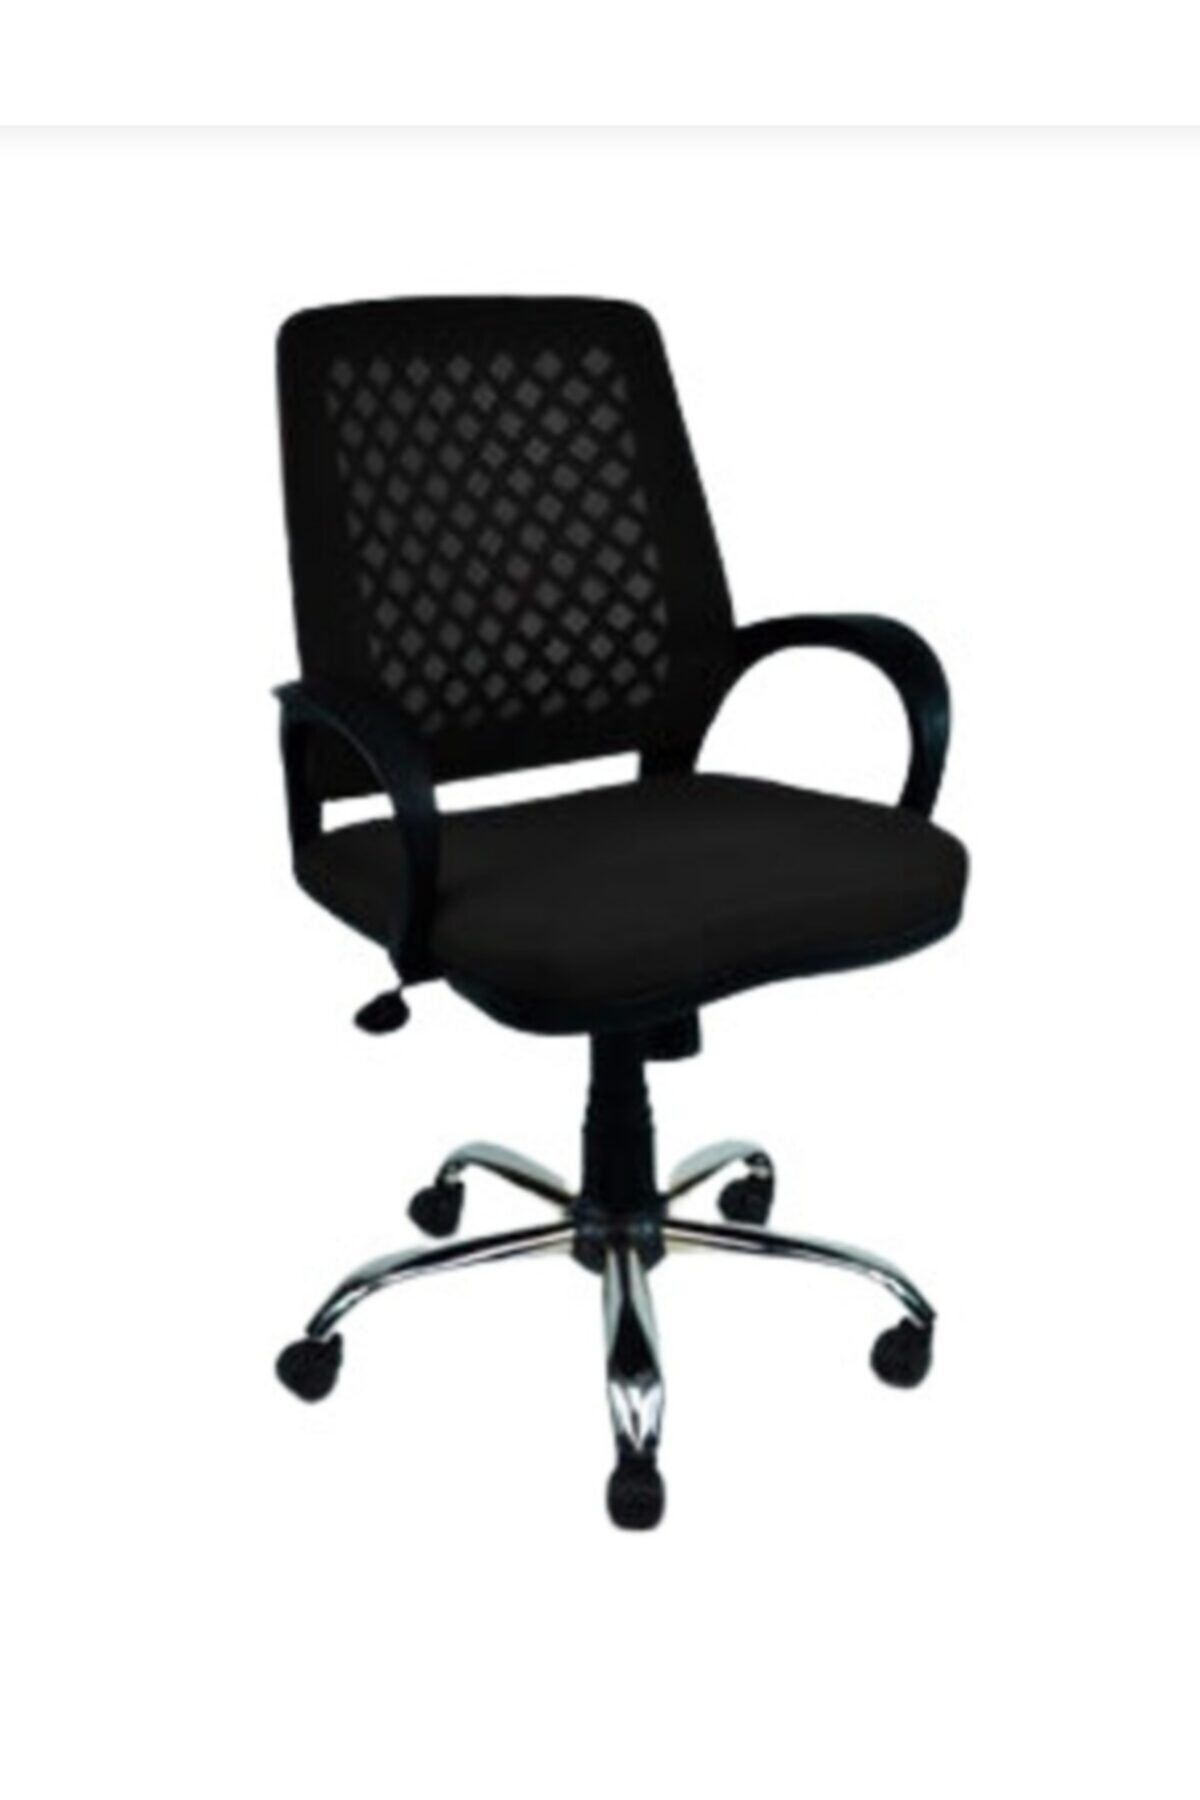 CLK Fileli Petek Ofis Büro Bilgisayar Koltuğu Sandalyesi Siyah Krom Ayak